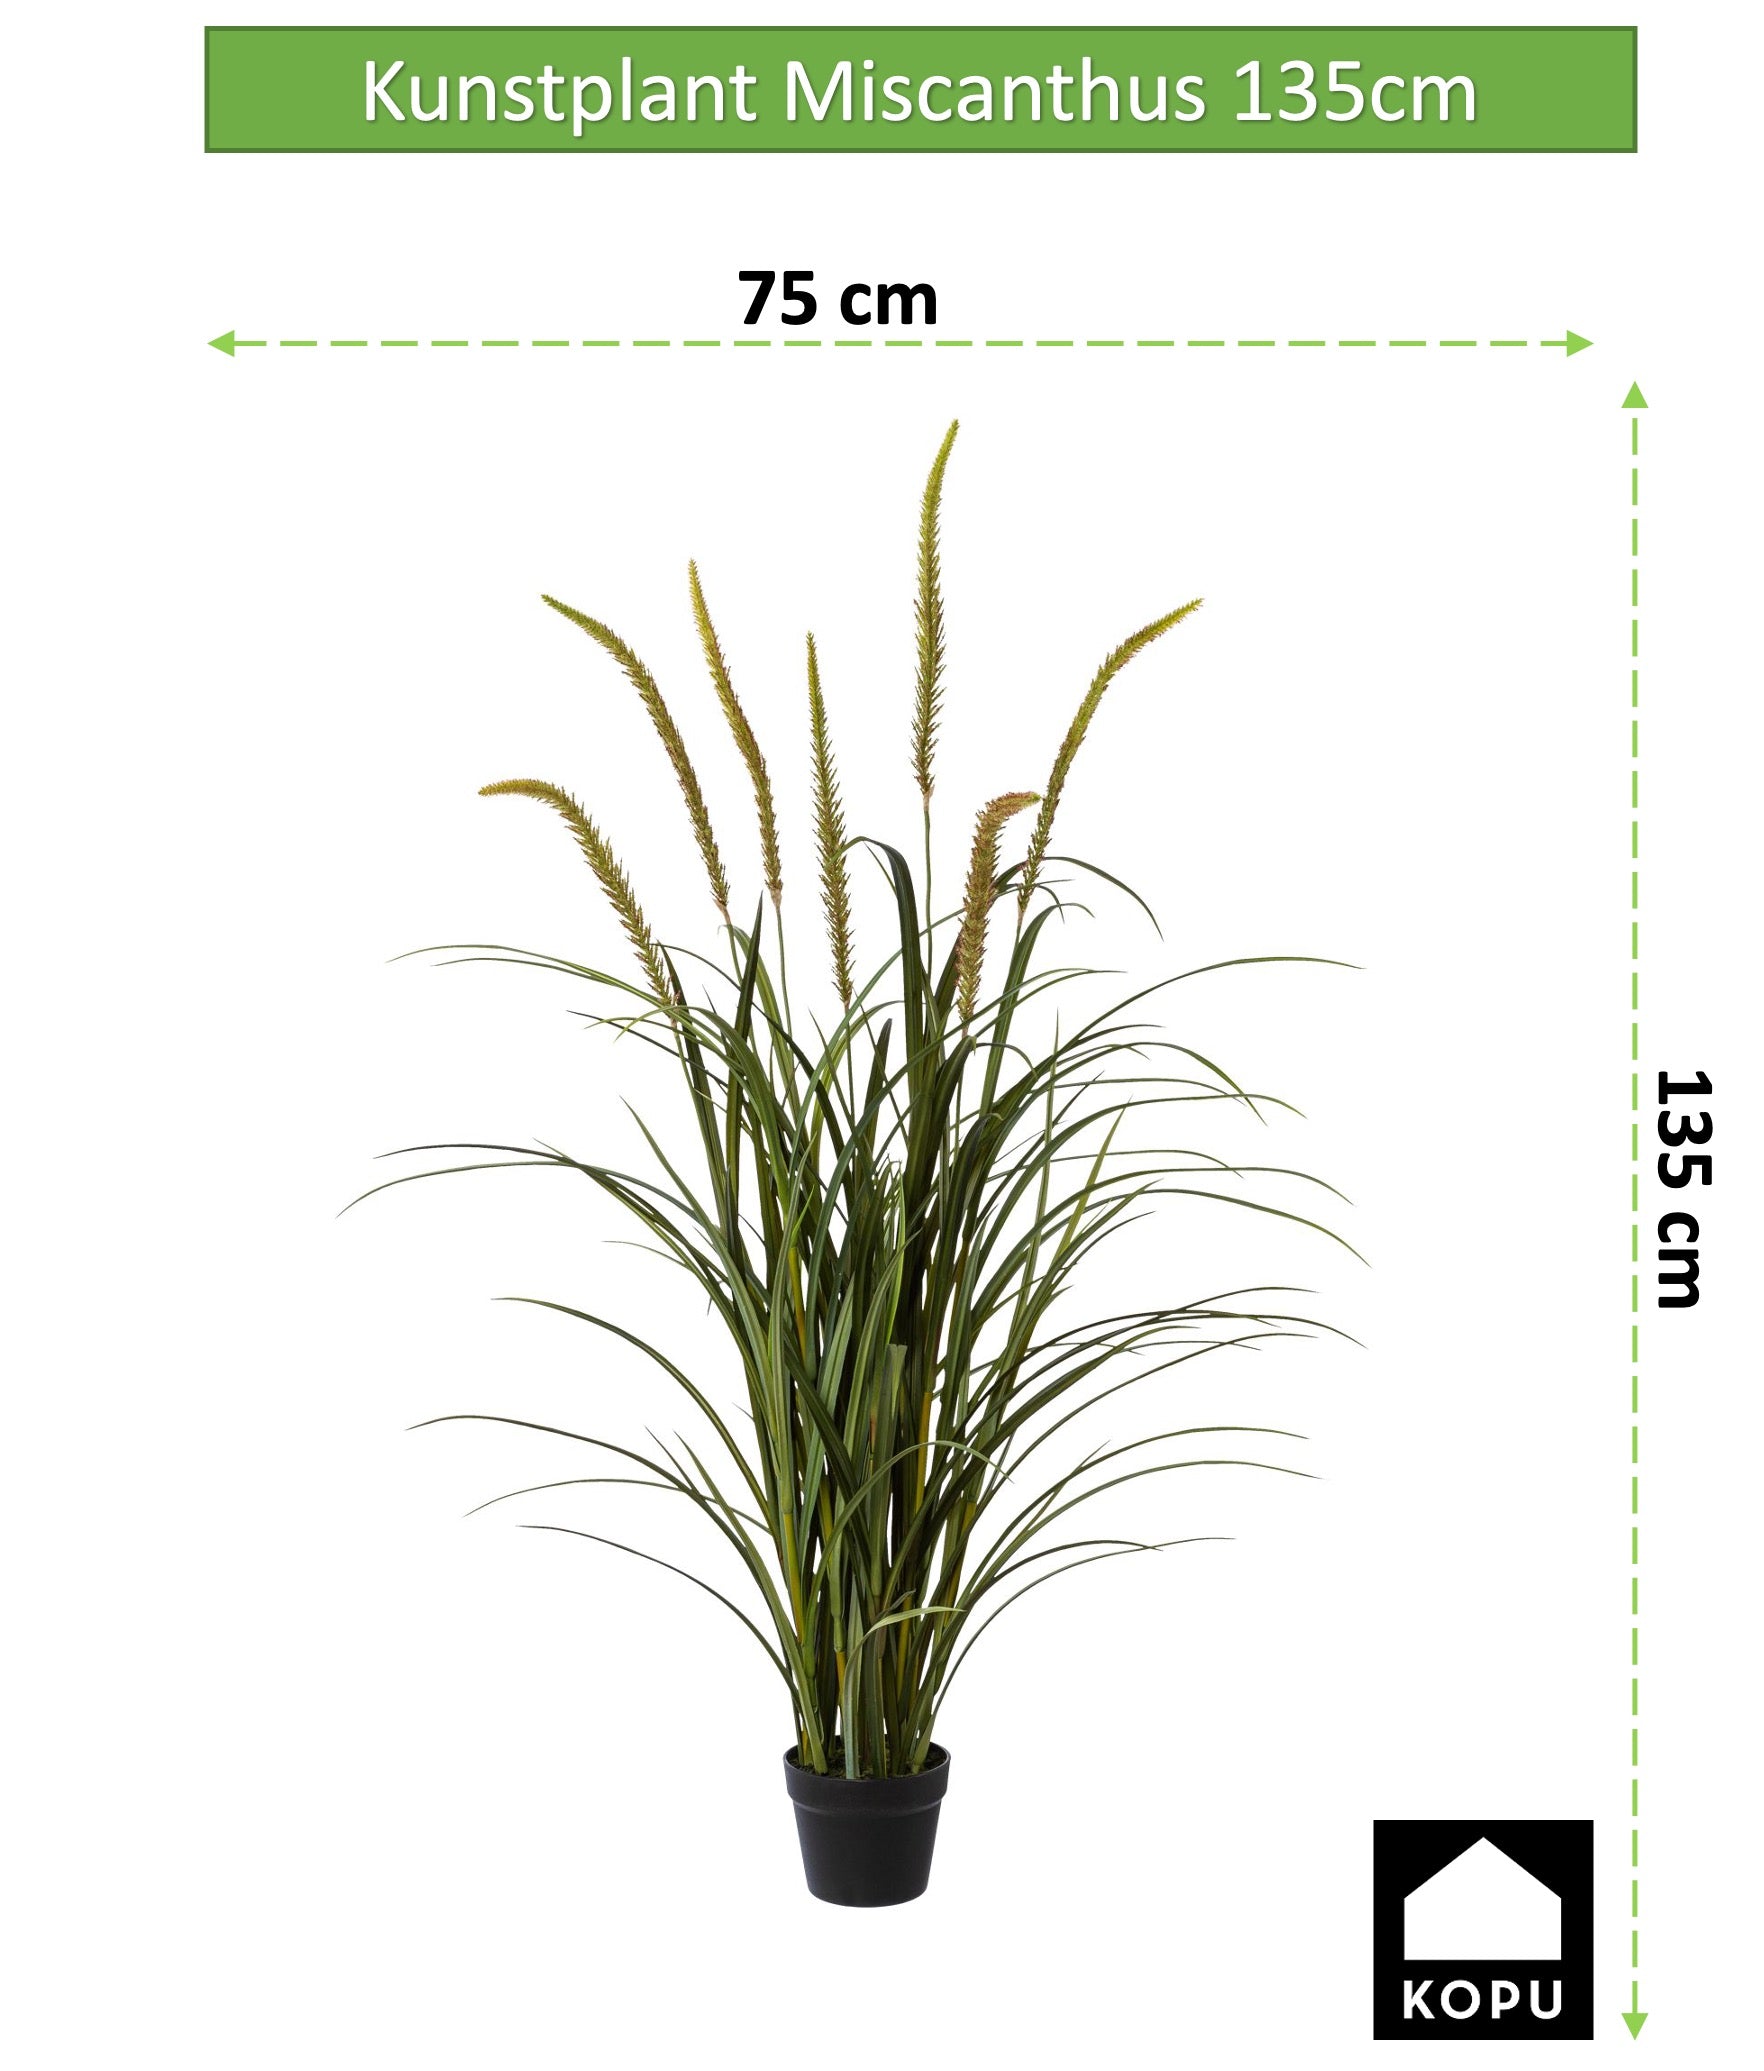 Kopu® Kunstplant Miscanthus 135 cm - 7 pluimen - in zwarte pot